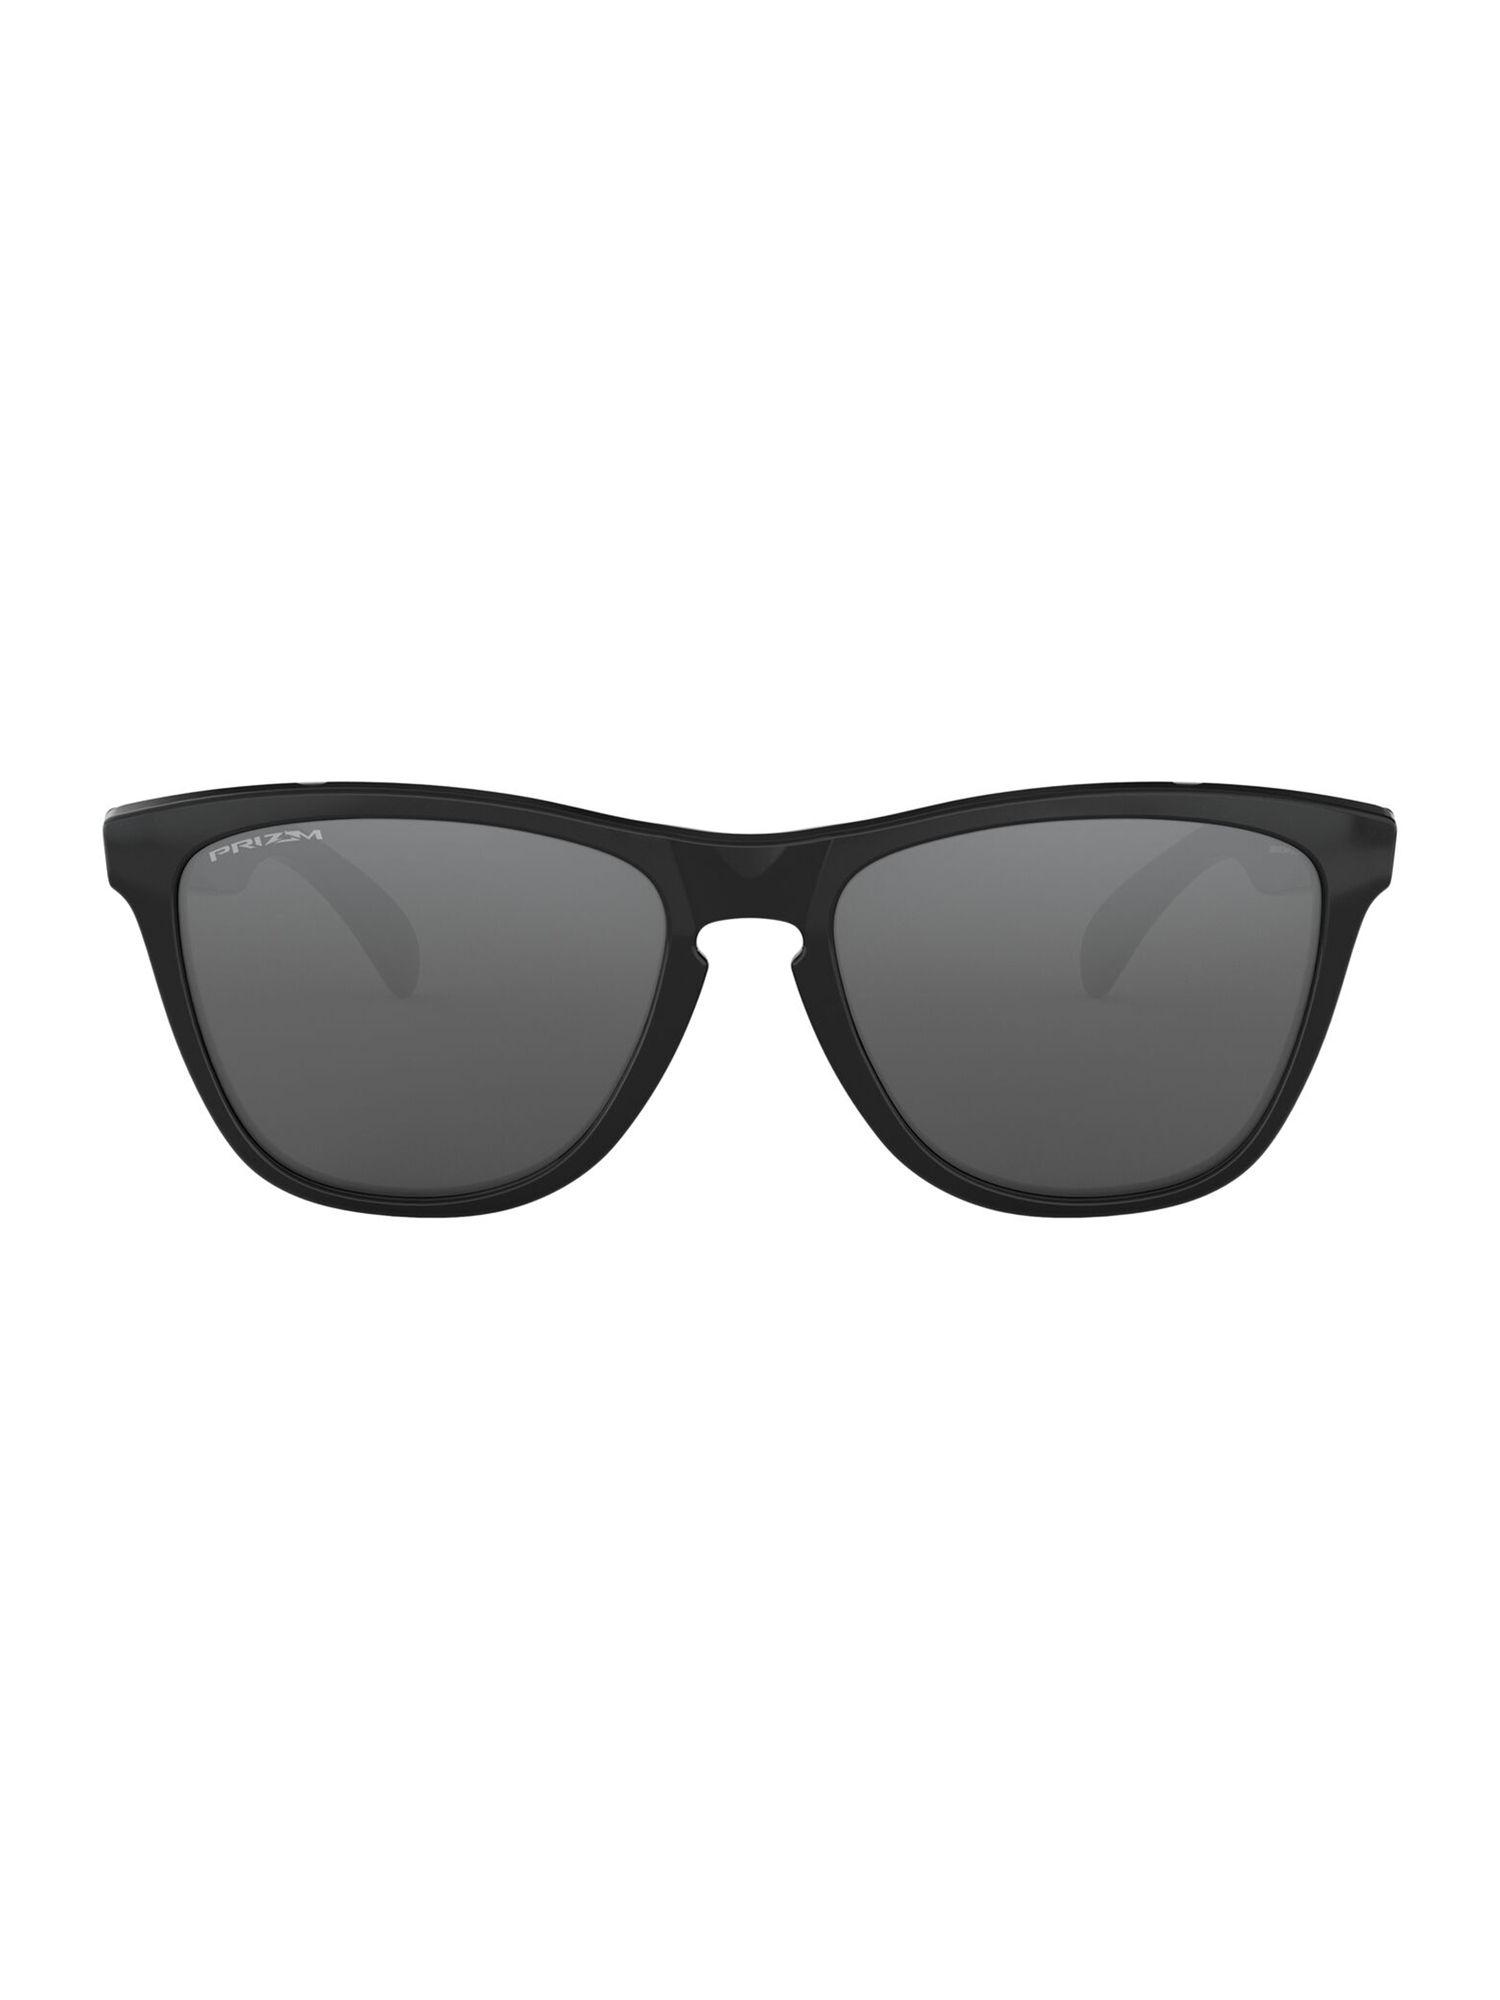 Polished Black Sunglasses(0OO9013I|Square |Black Frame|Grey Lens |55 mm )